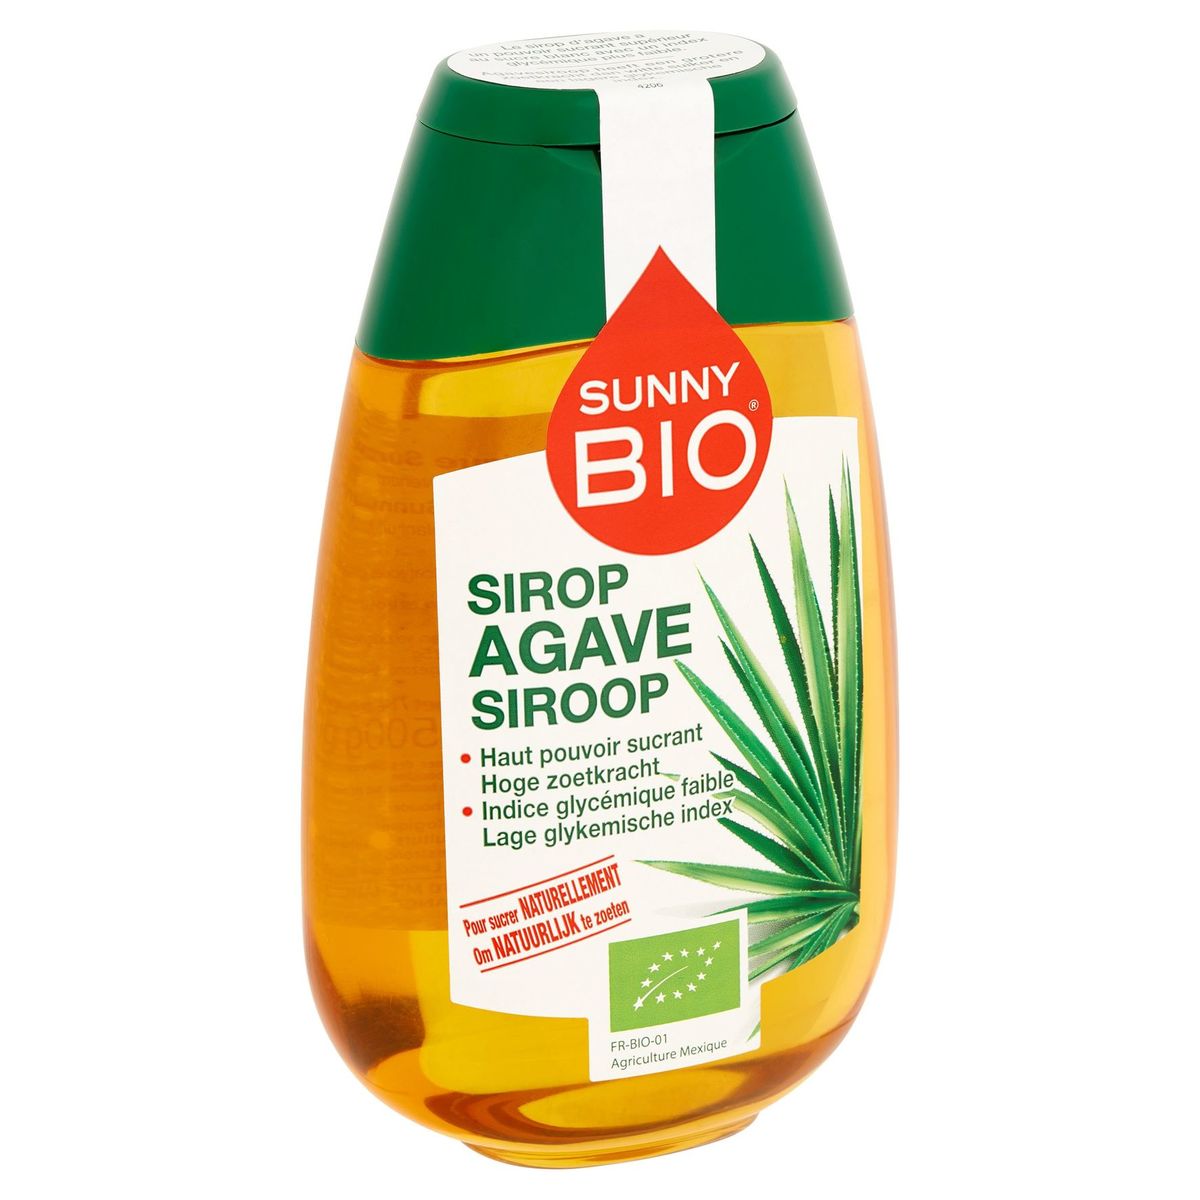 Sunny Bio Sirop Agave 500 g